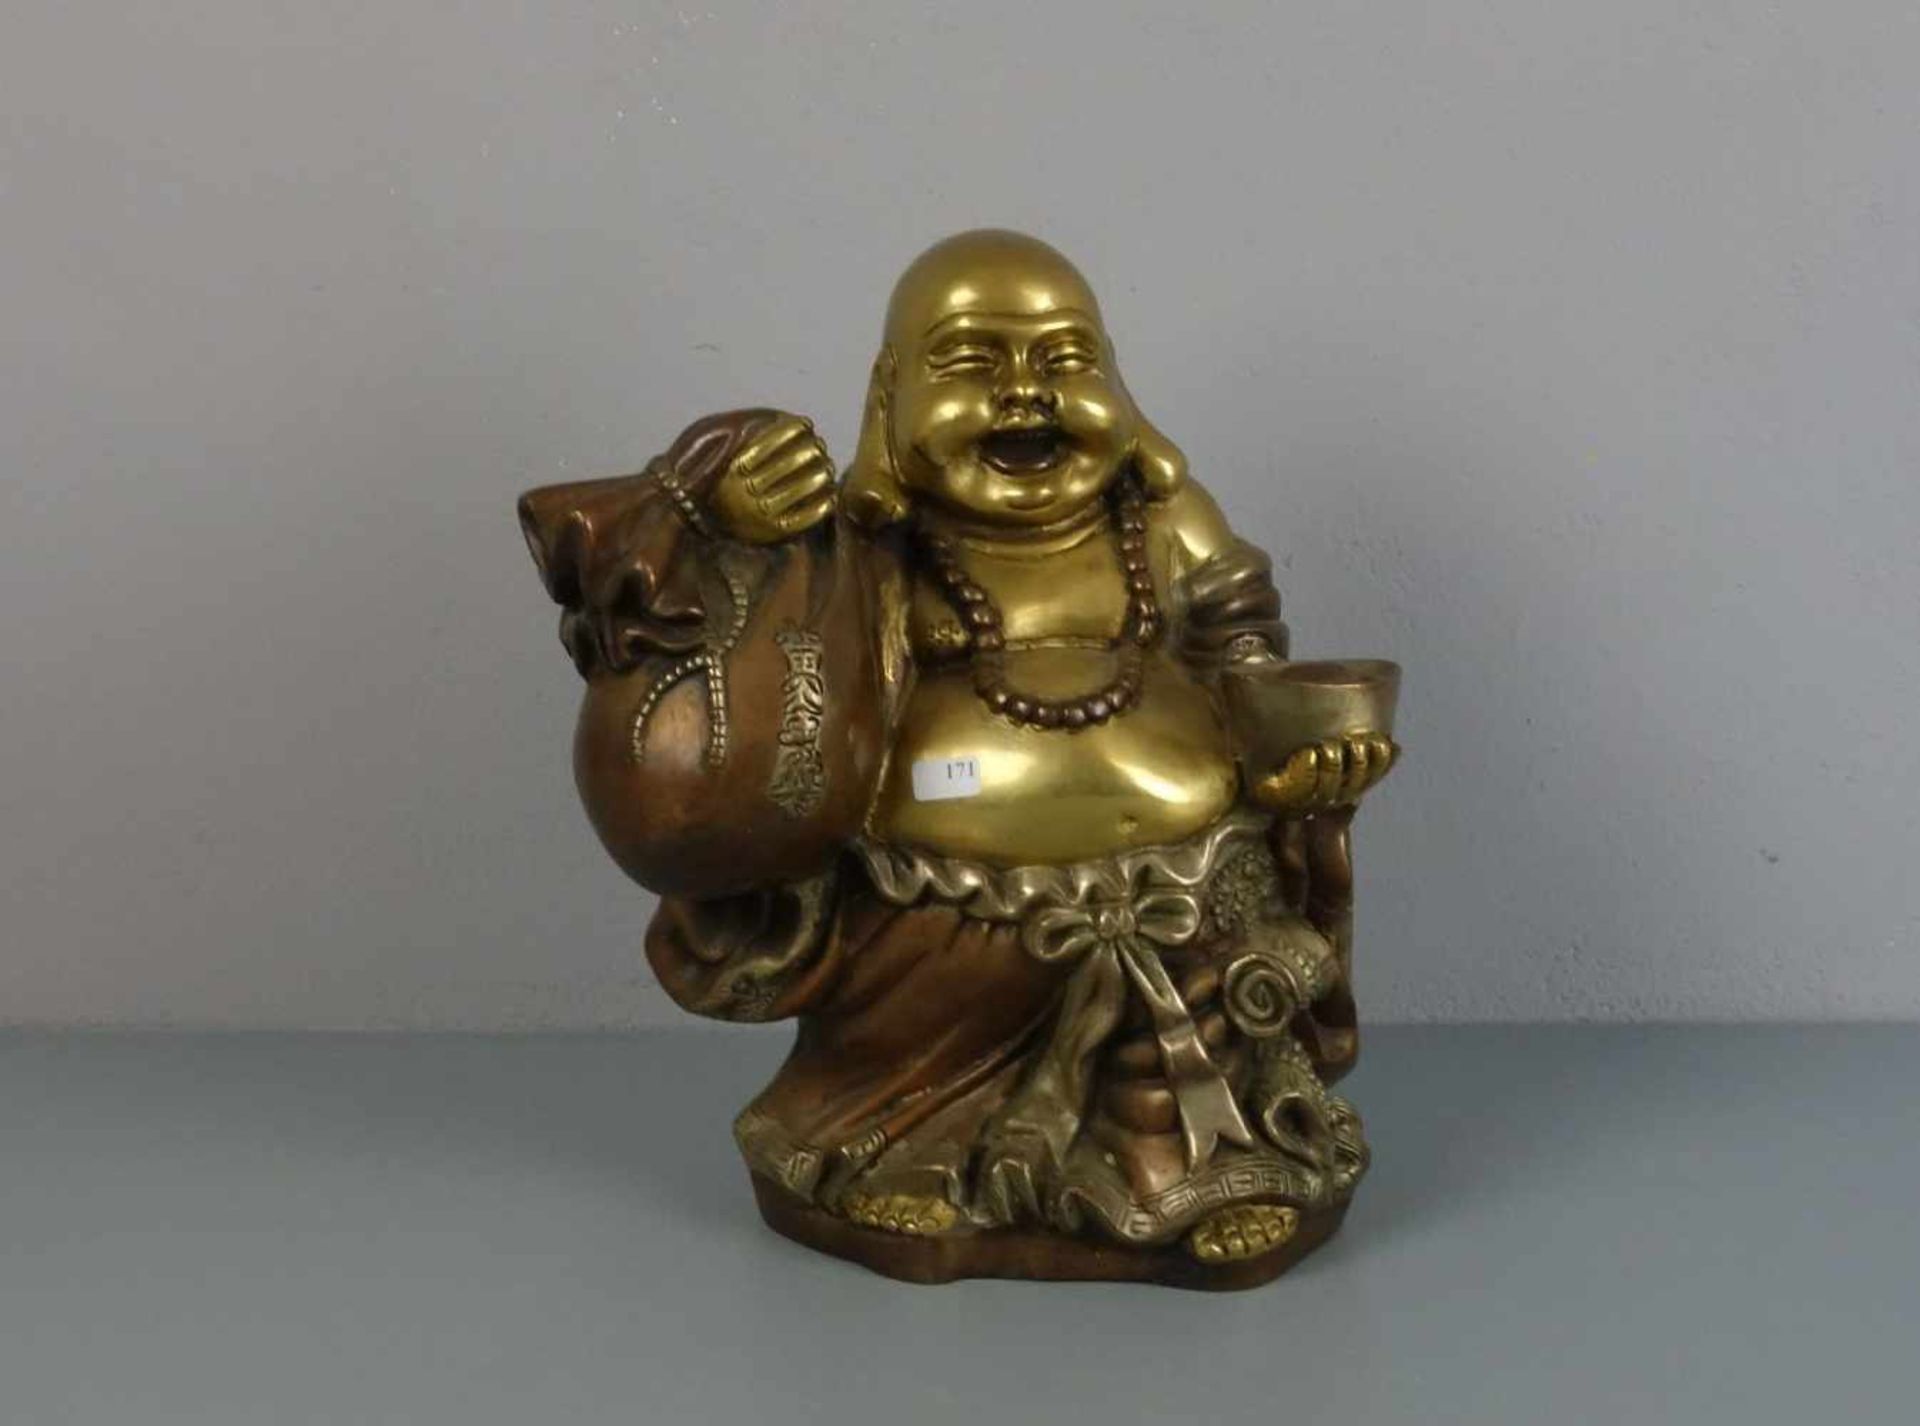 SKULPTUR: Buddha "Budai" / Glücksbuddha, Bronze, gold-, silber- und kupferfarben patiniert. Buddha